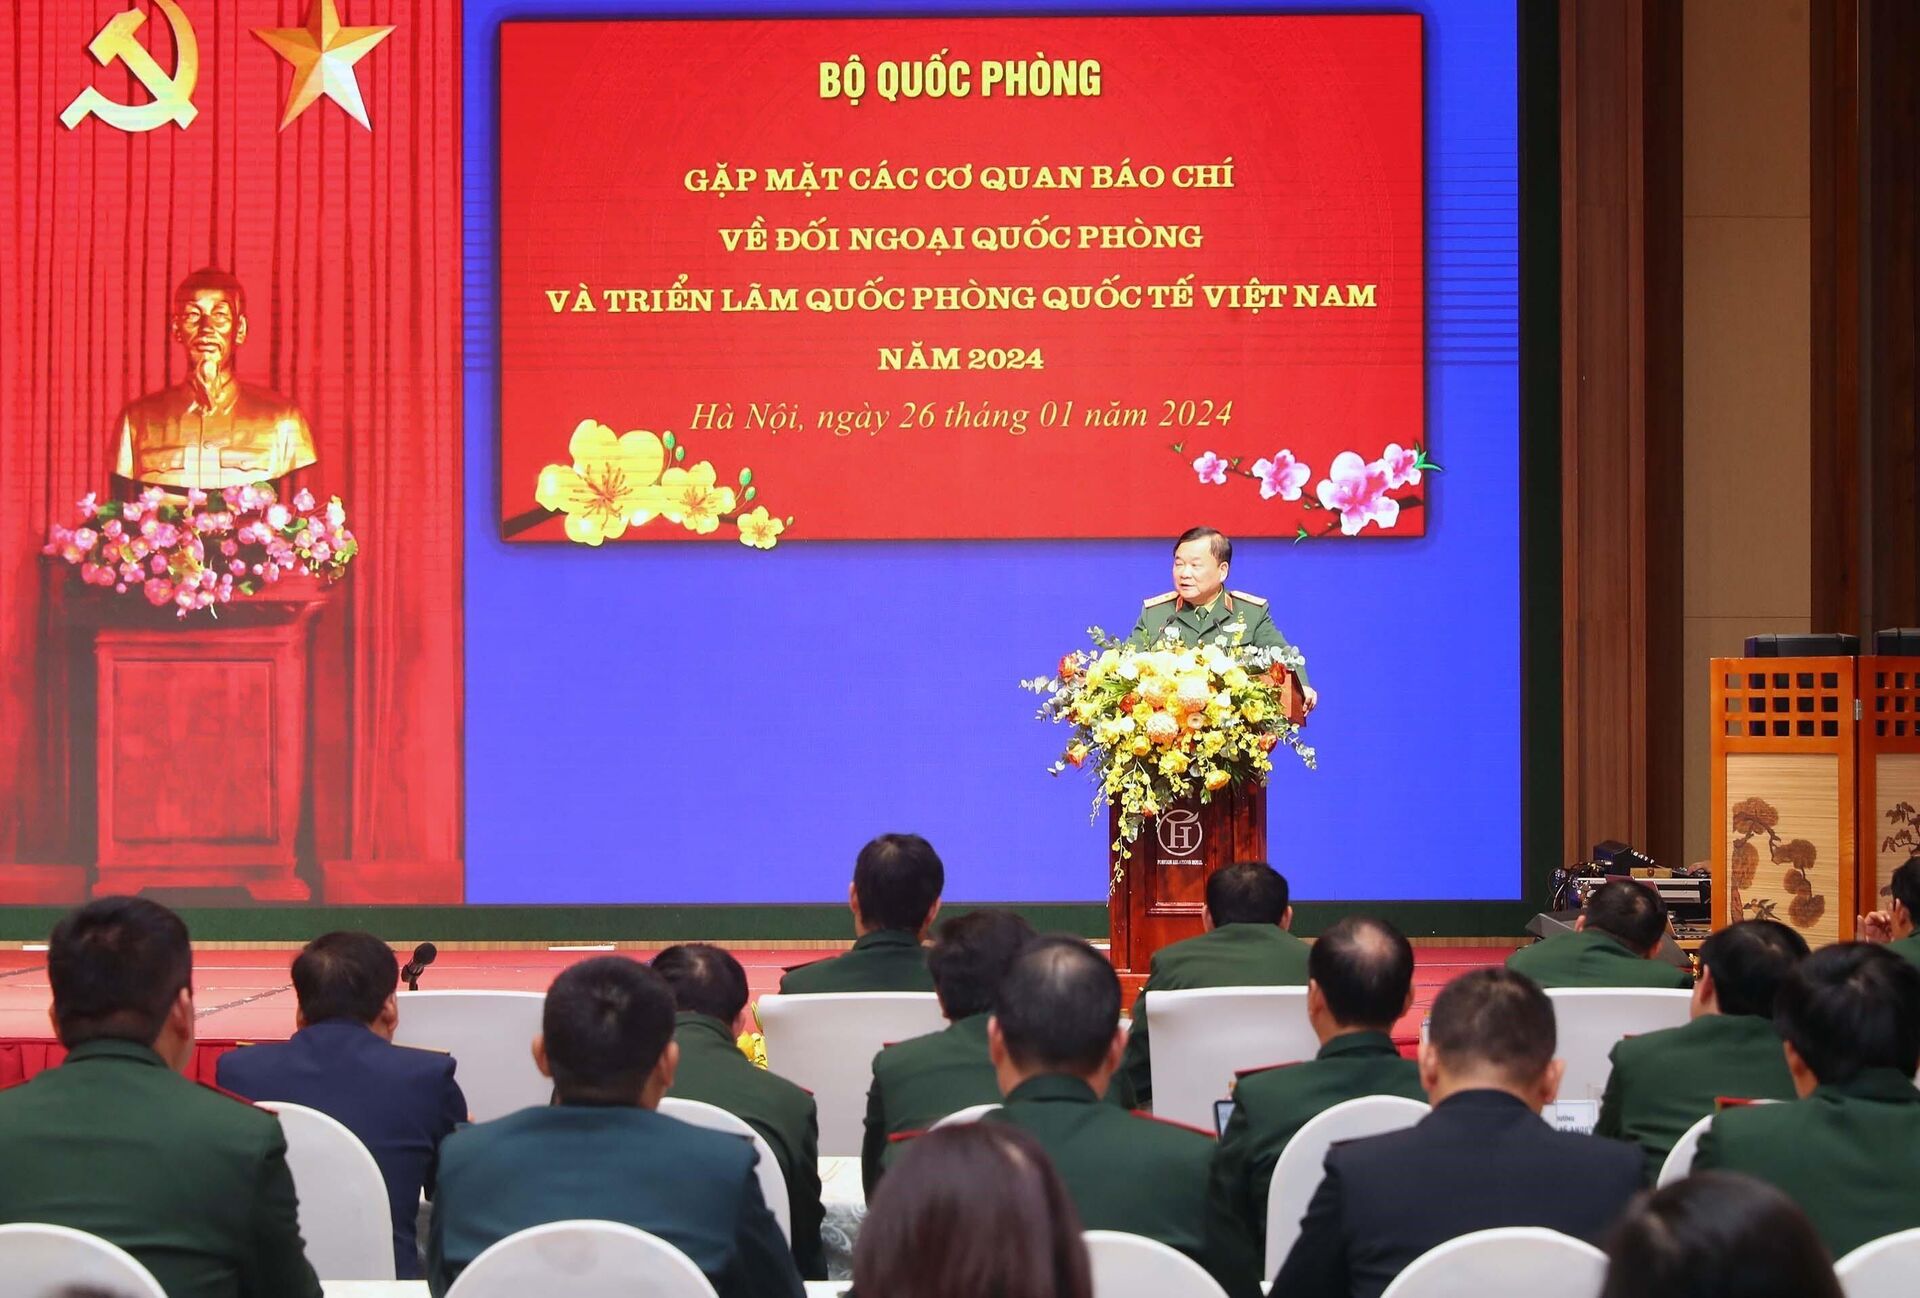 Bộ Quốc phòng giới thiệu công tác đối ngoại Quốc phòng và triển lãm Quốc phòng quốc tế Việt Nam 2024 - Sputnik Việt Nam, 1920, 26.01.2024